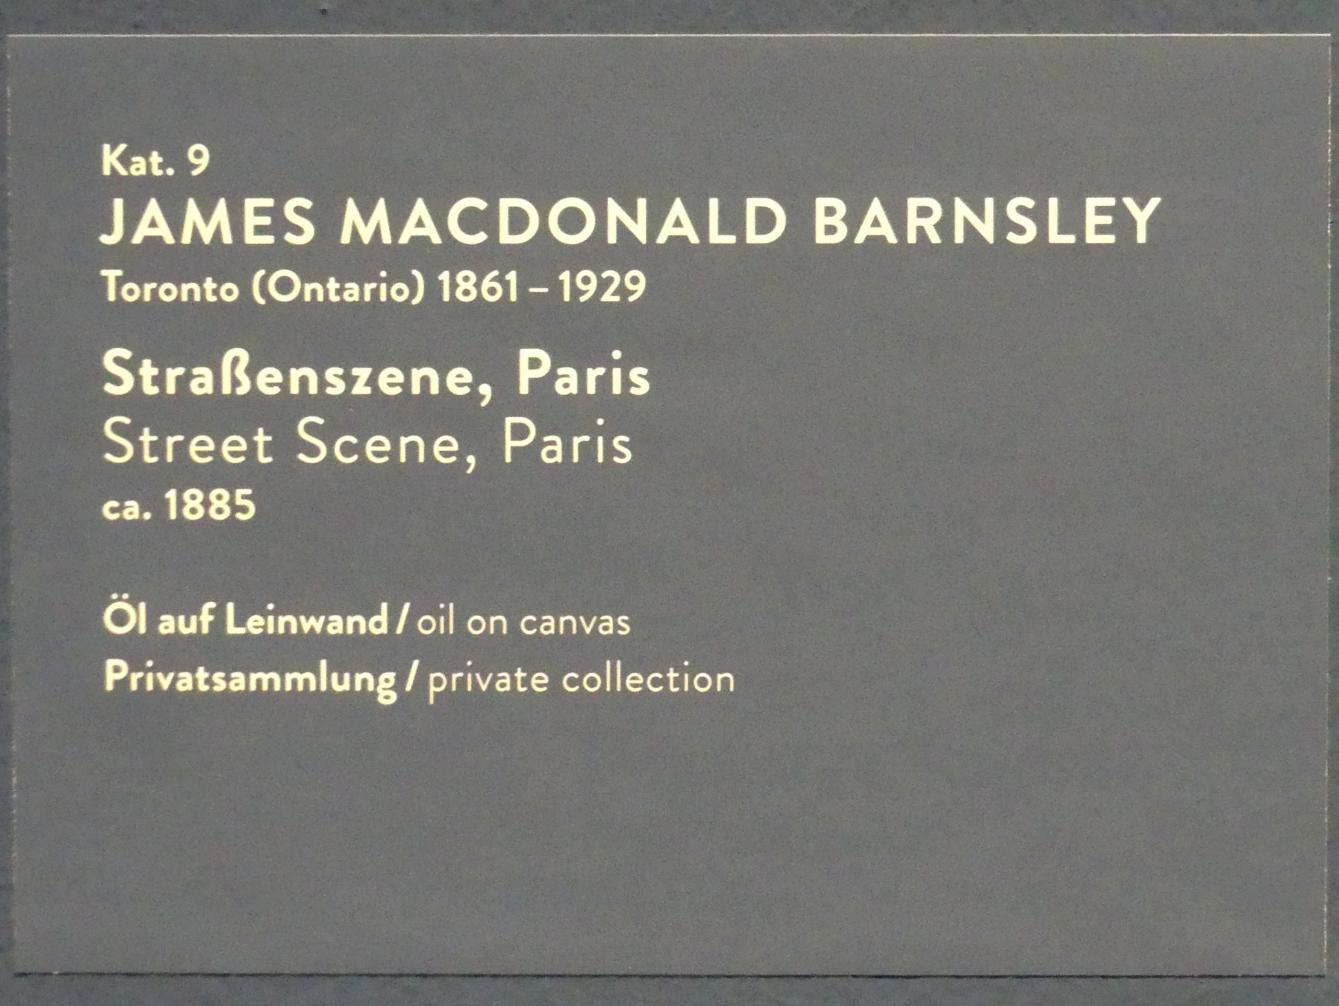 James Macdonald Barnsley (1885), Straßenszene, Paris, München, Kunsthalle, Ausstellung "Kanada und der Impressionismus" vom 19.07.-17.11.2019, Frankreich-Impressionen, um 1885, Bild 2/2